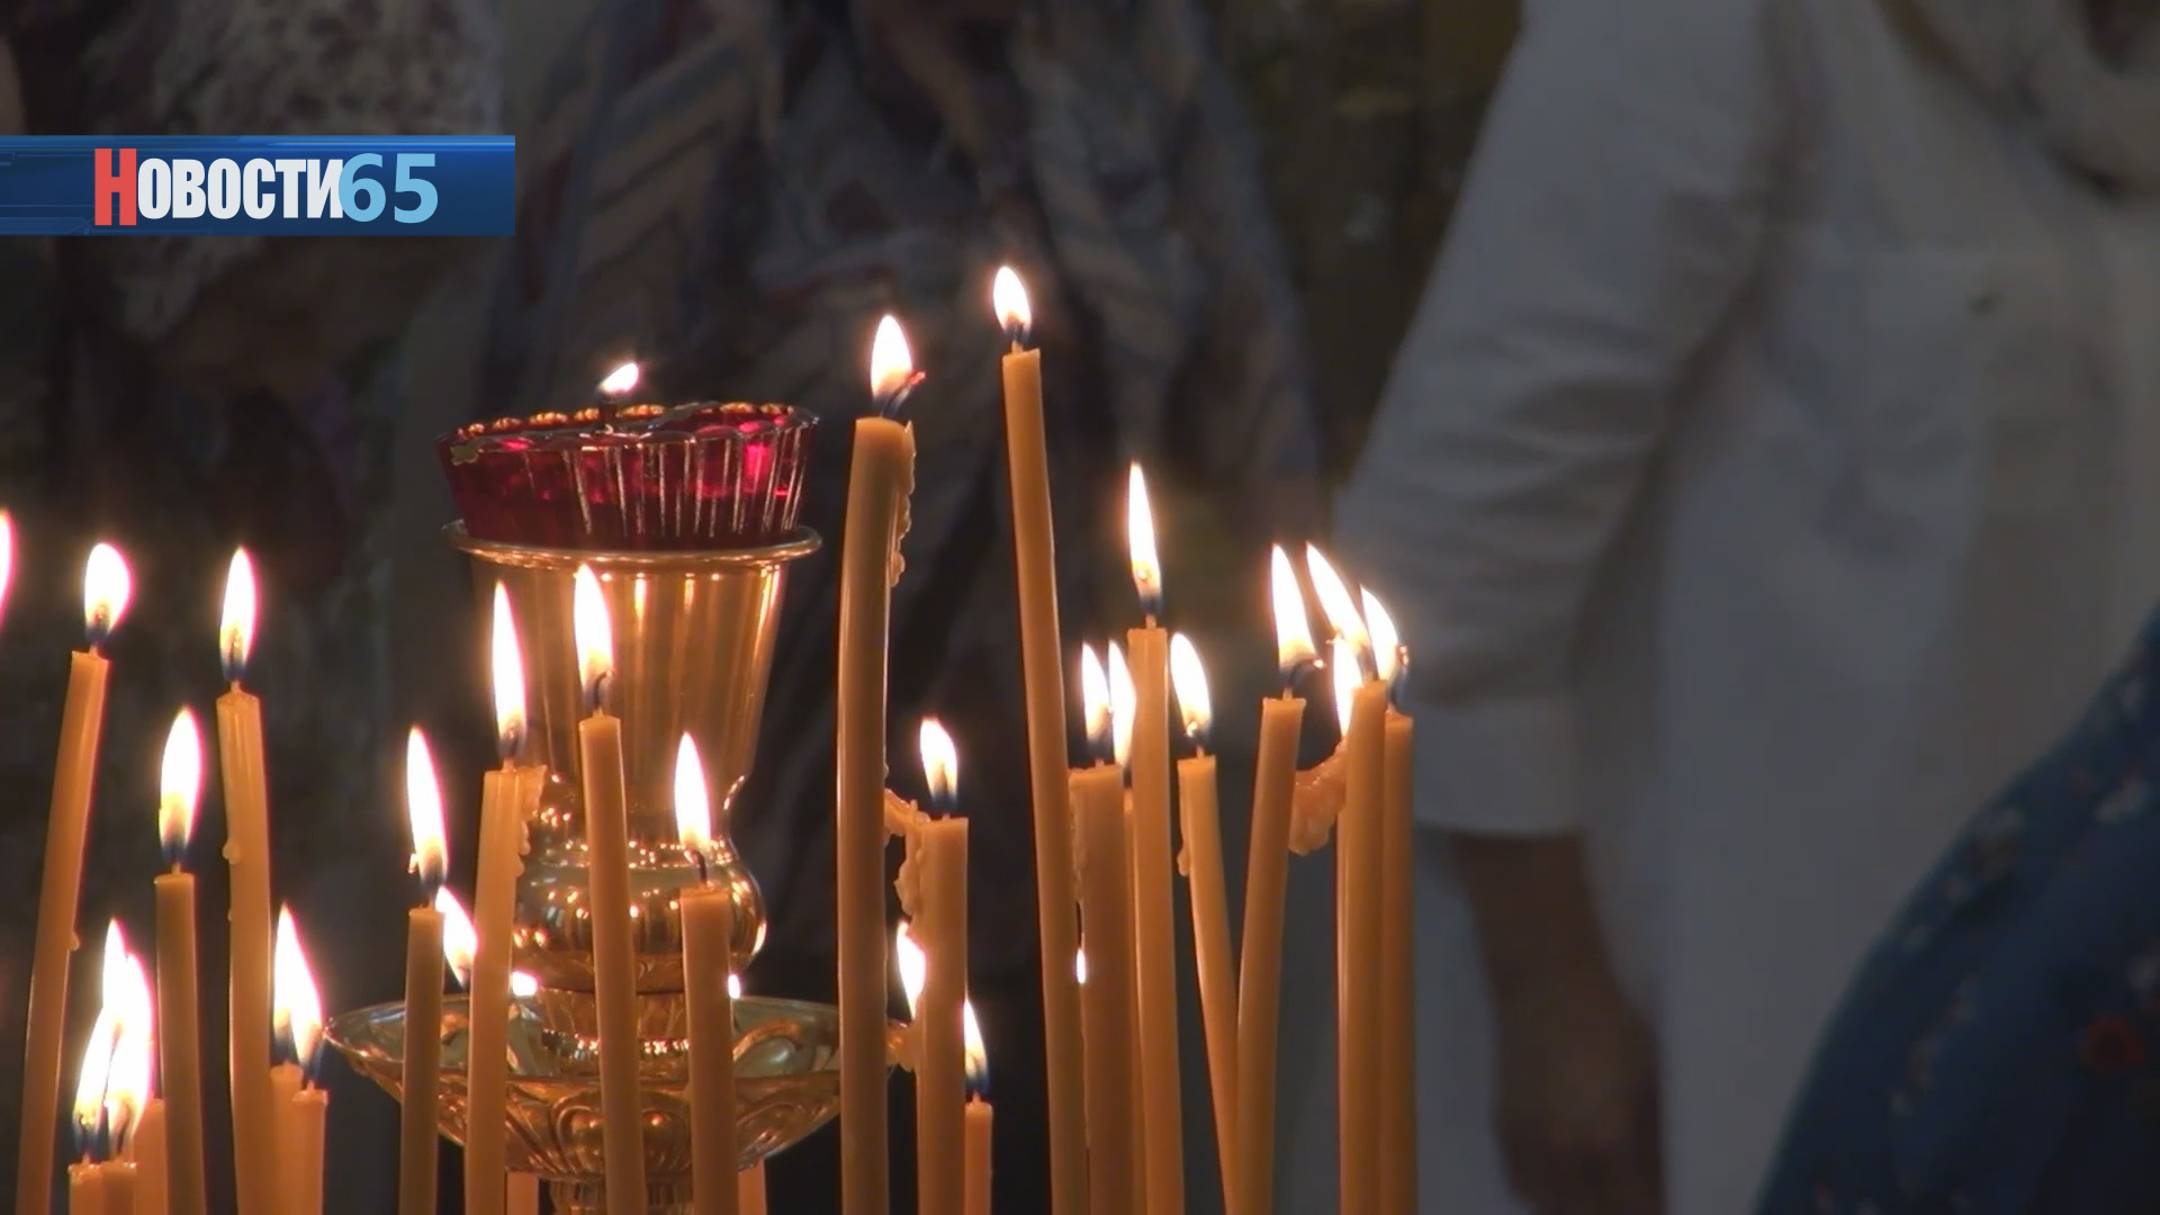 30 лет духовной поддержке. Храм святителя Иннокентия Московского отпразднует свой юбилей